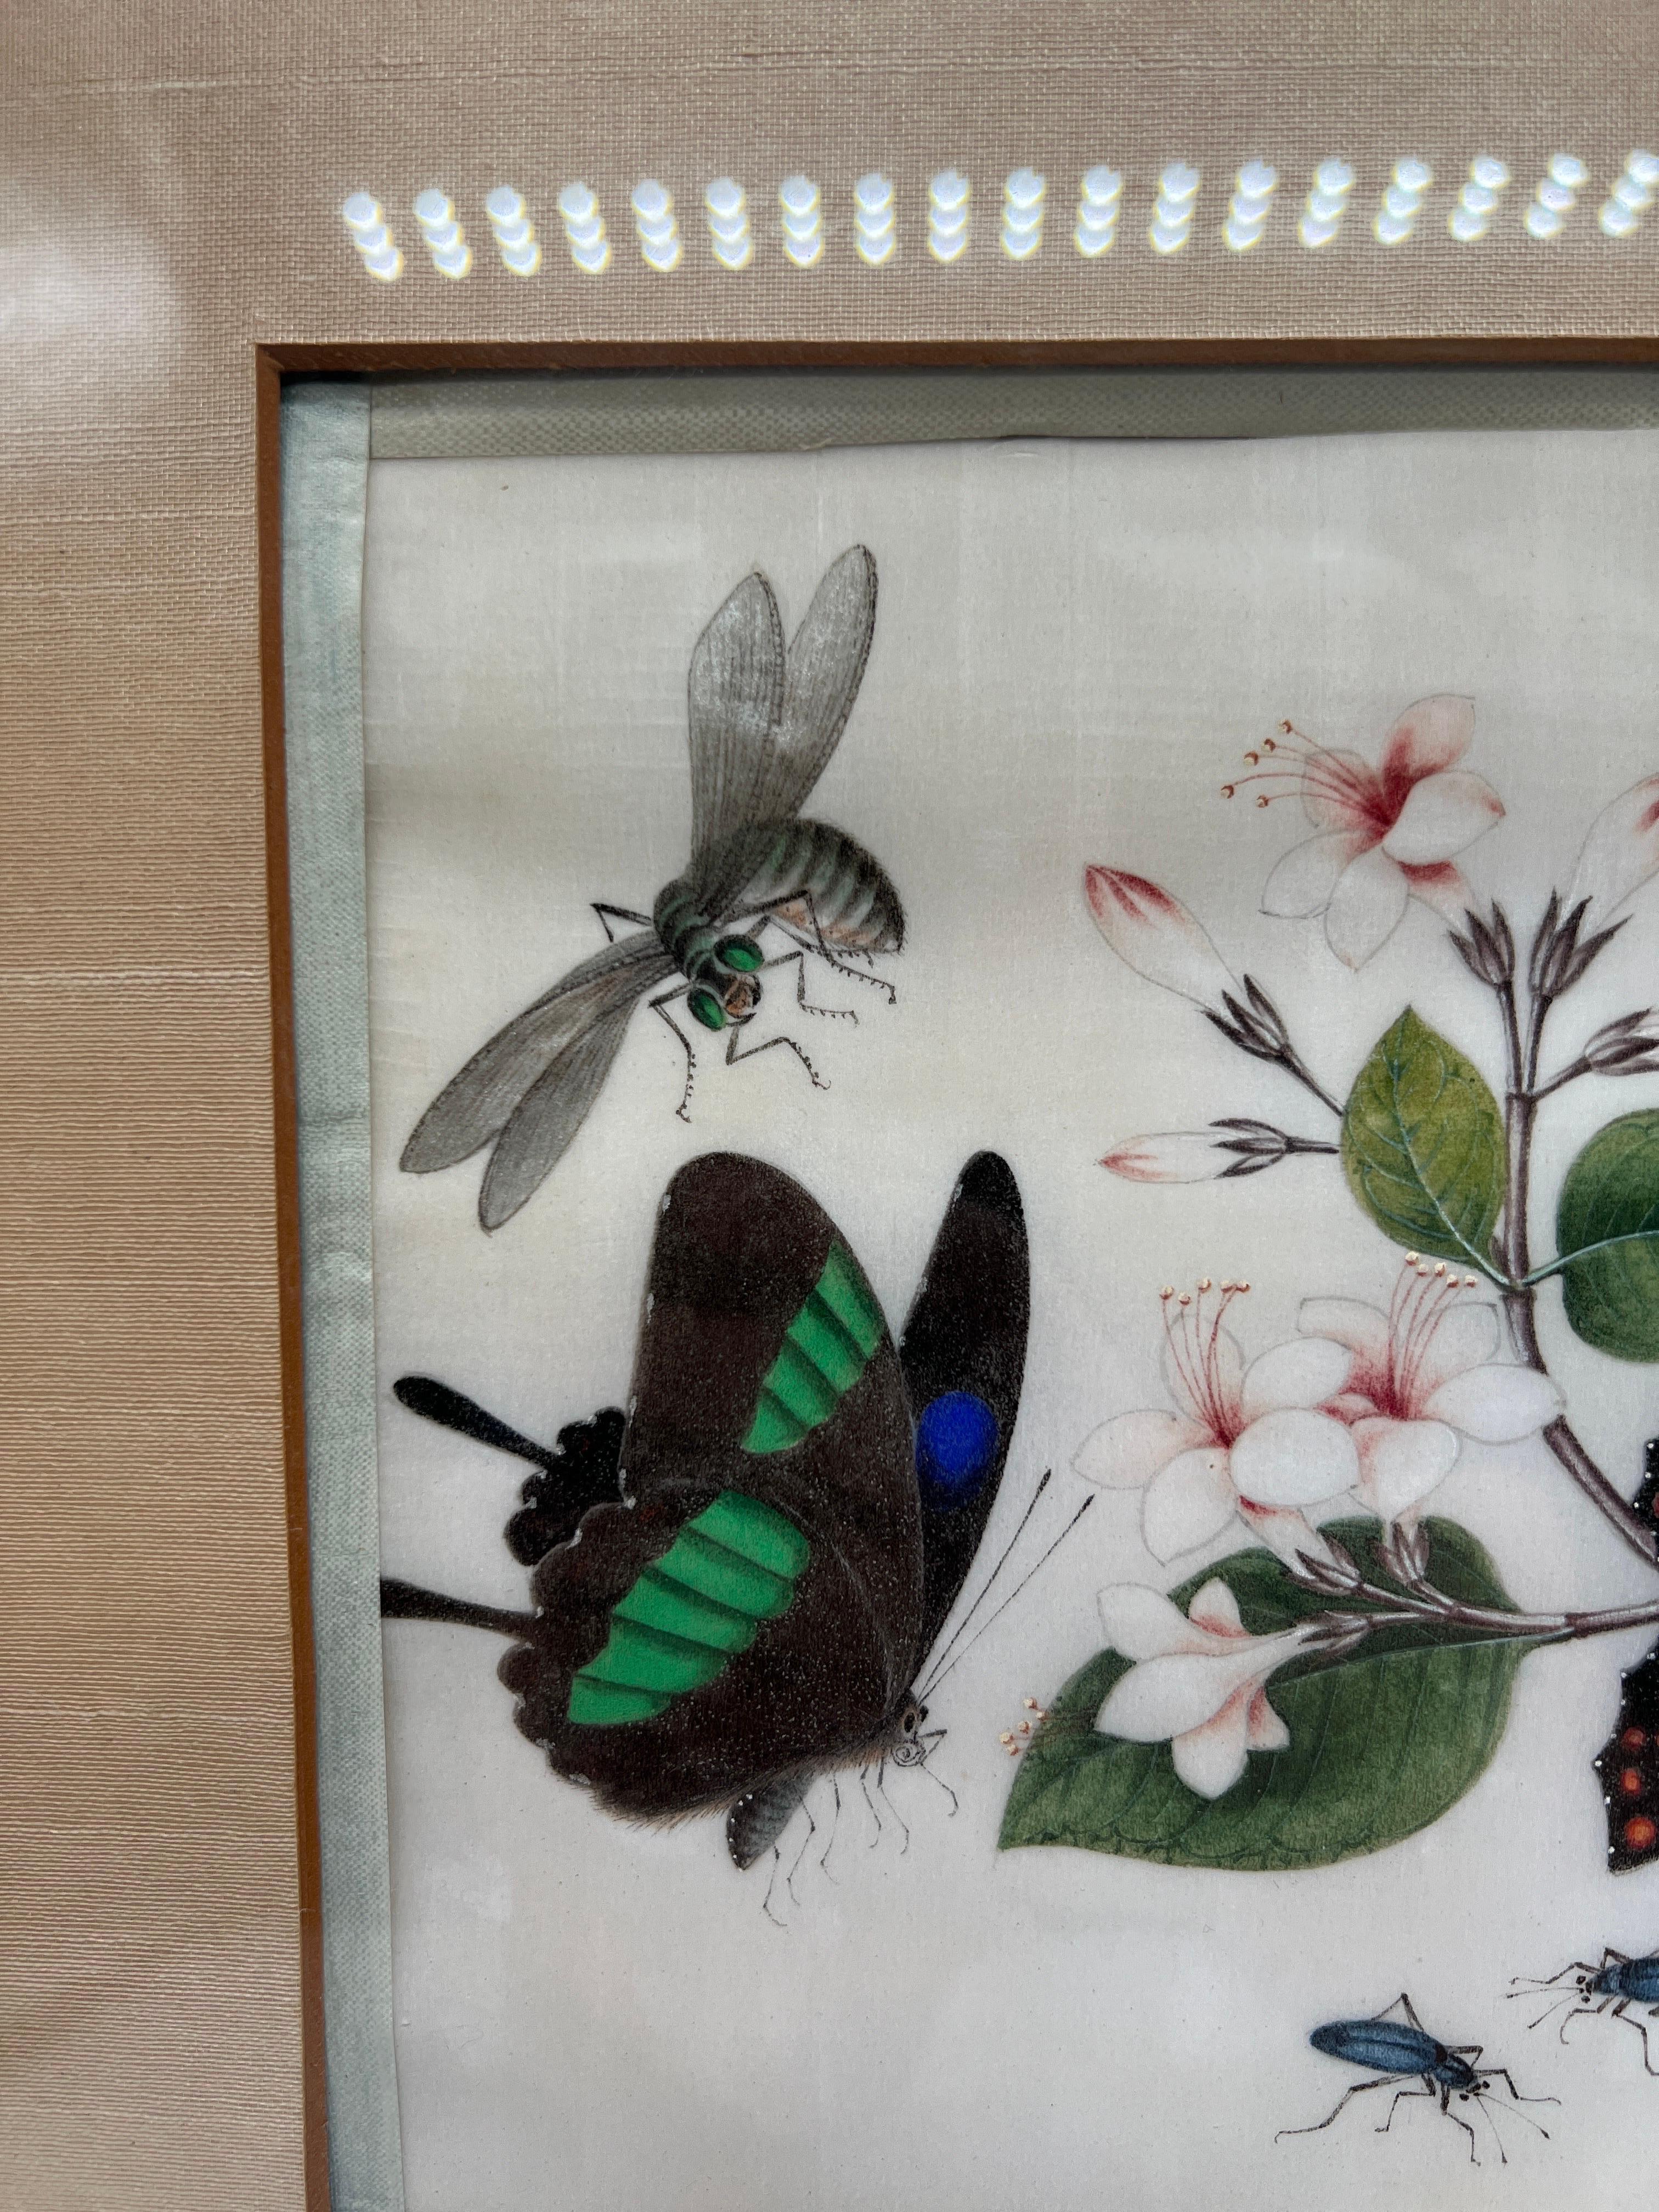 Canton, Chine, vers 1830. 

Une superbe et inhabituelle aquarelle à la moelle représentant des papillons et des insectes autour d'une branche d'arbre en fleurs. Non marqué. 